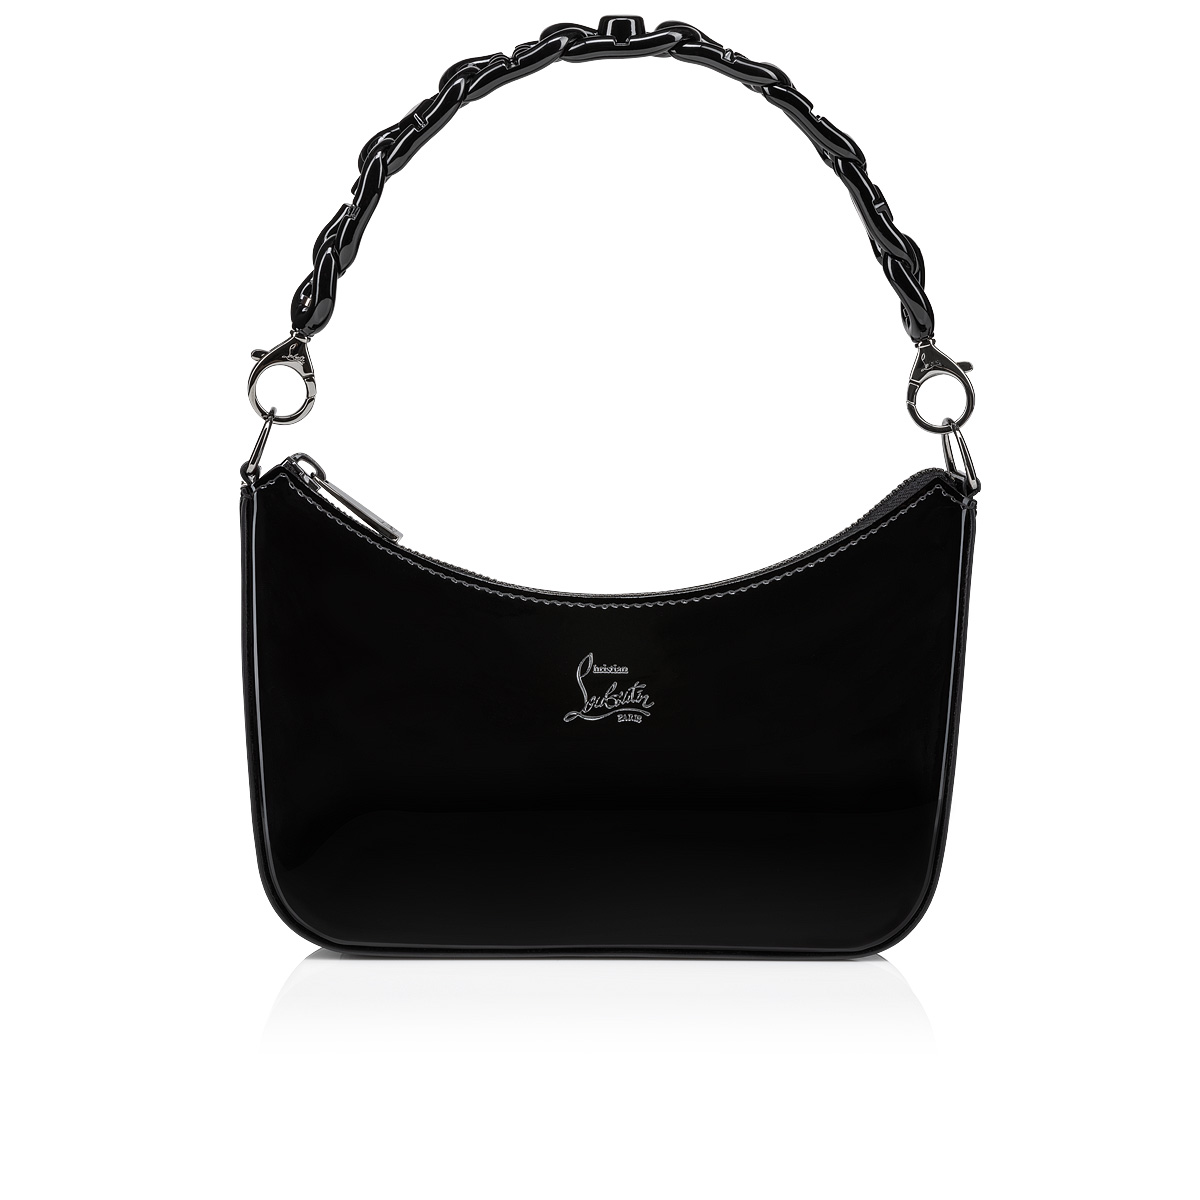 Dkny - Sporty Bag For Girls -  shop online